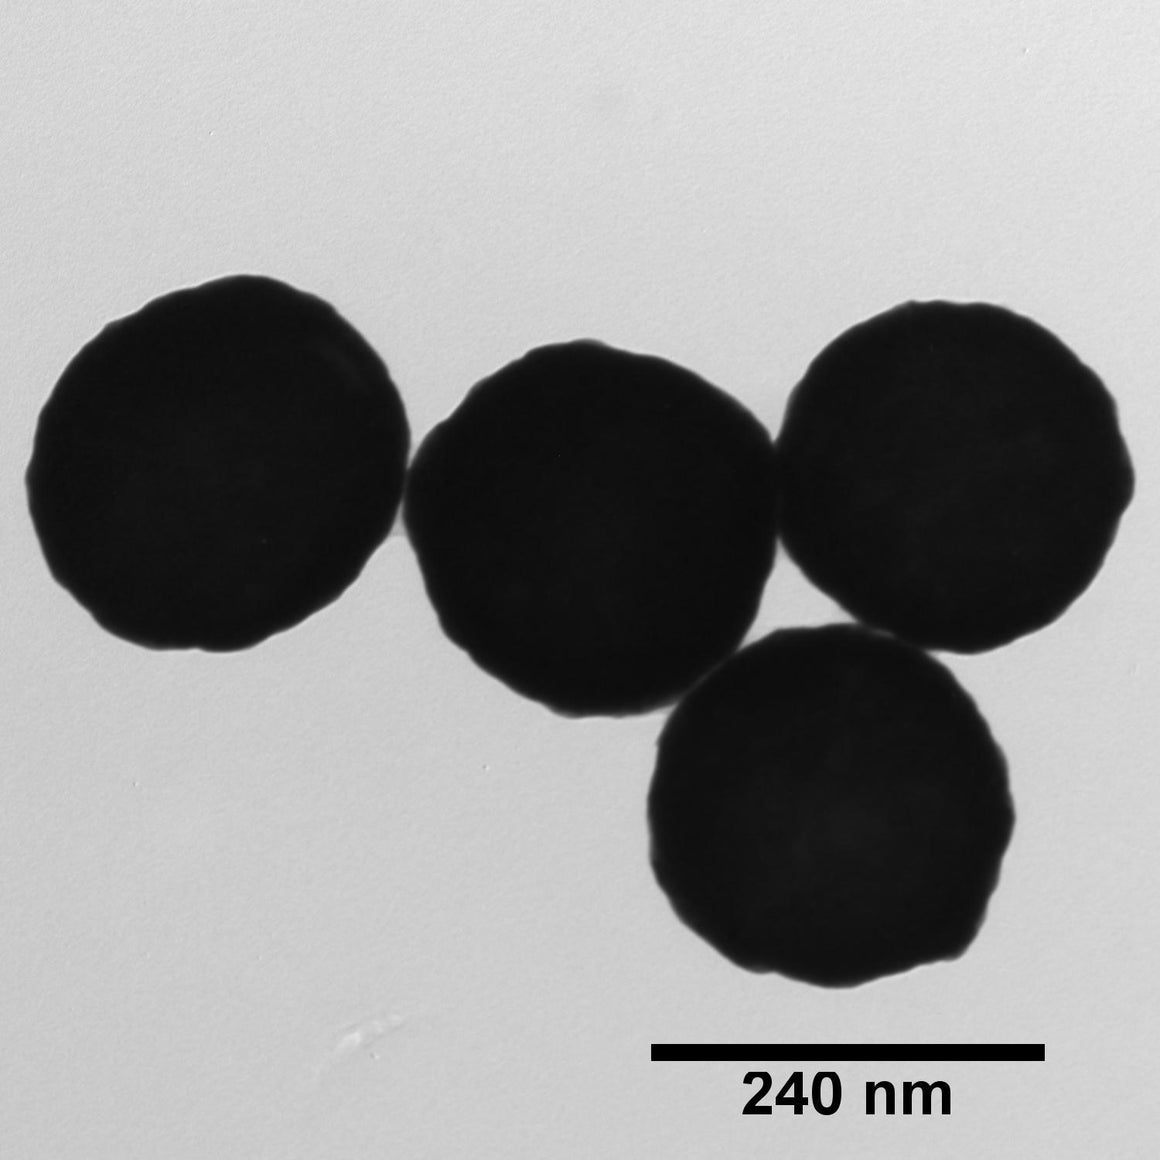 NanoXact Gold Nanoshells – PVP